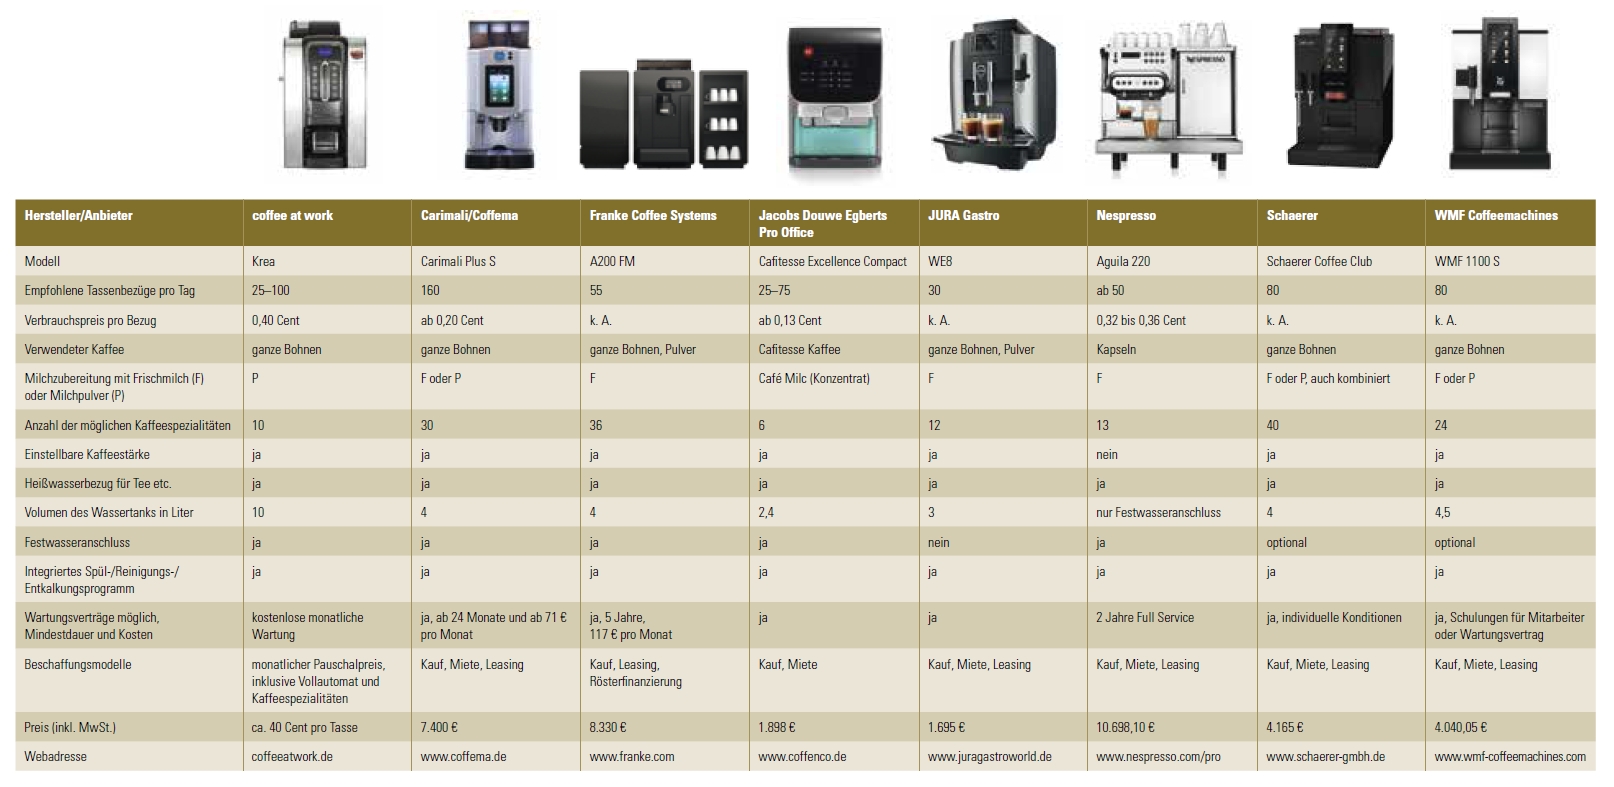 Marktübersicht über Kaffeevollautomaten für Unternehmen mit zehn bis zwölf Mitarbeitern.